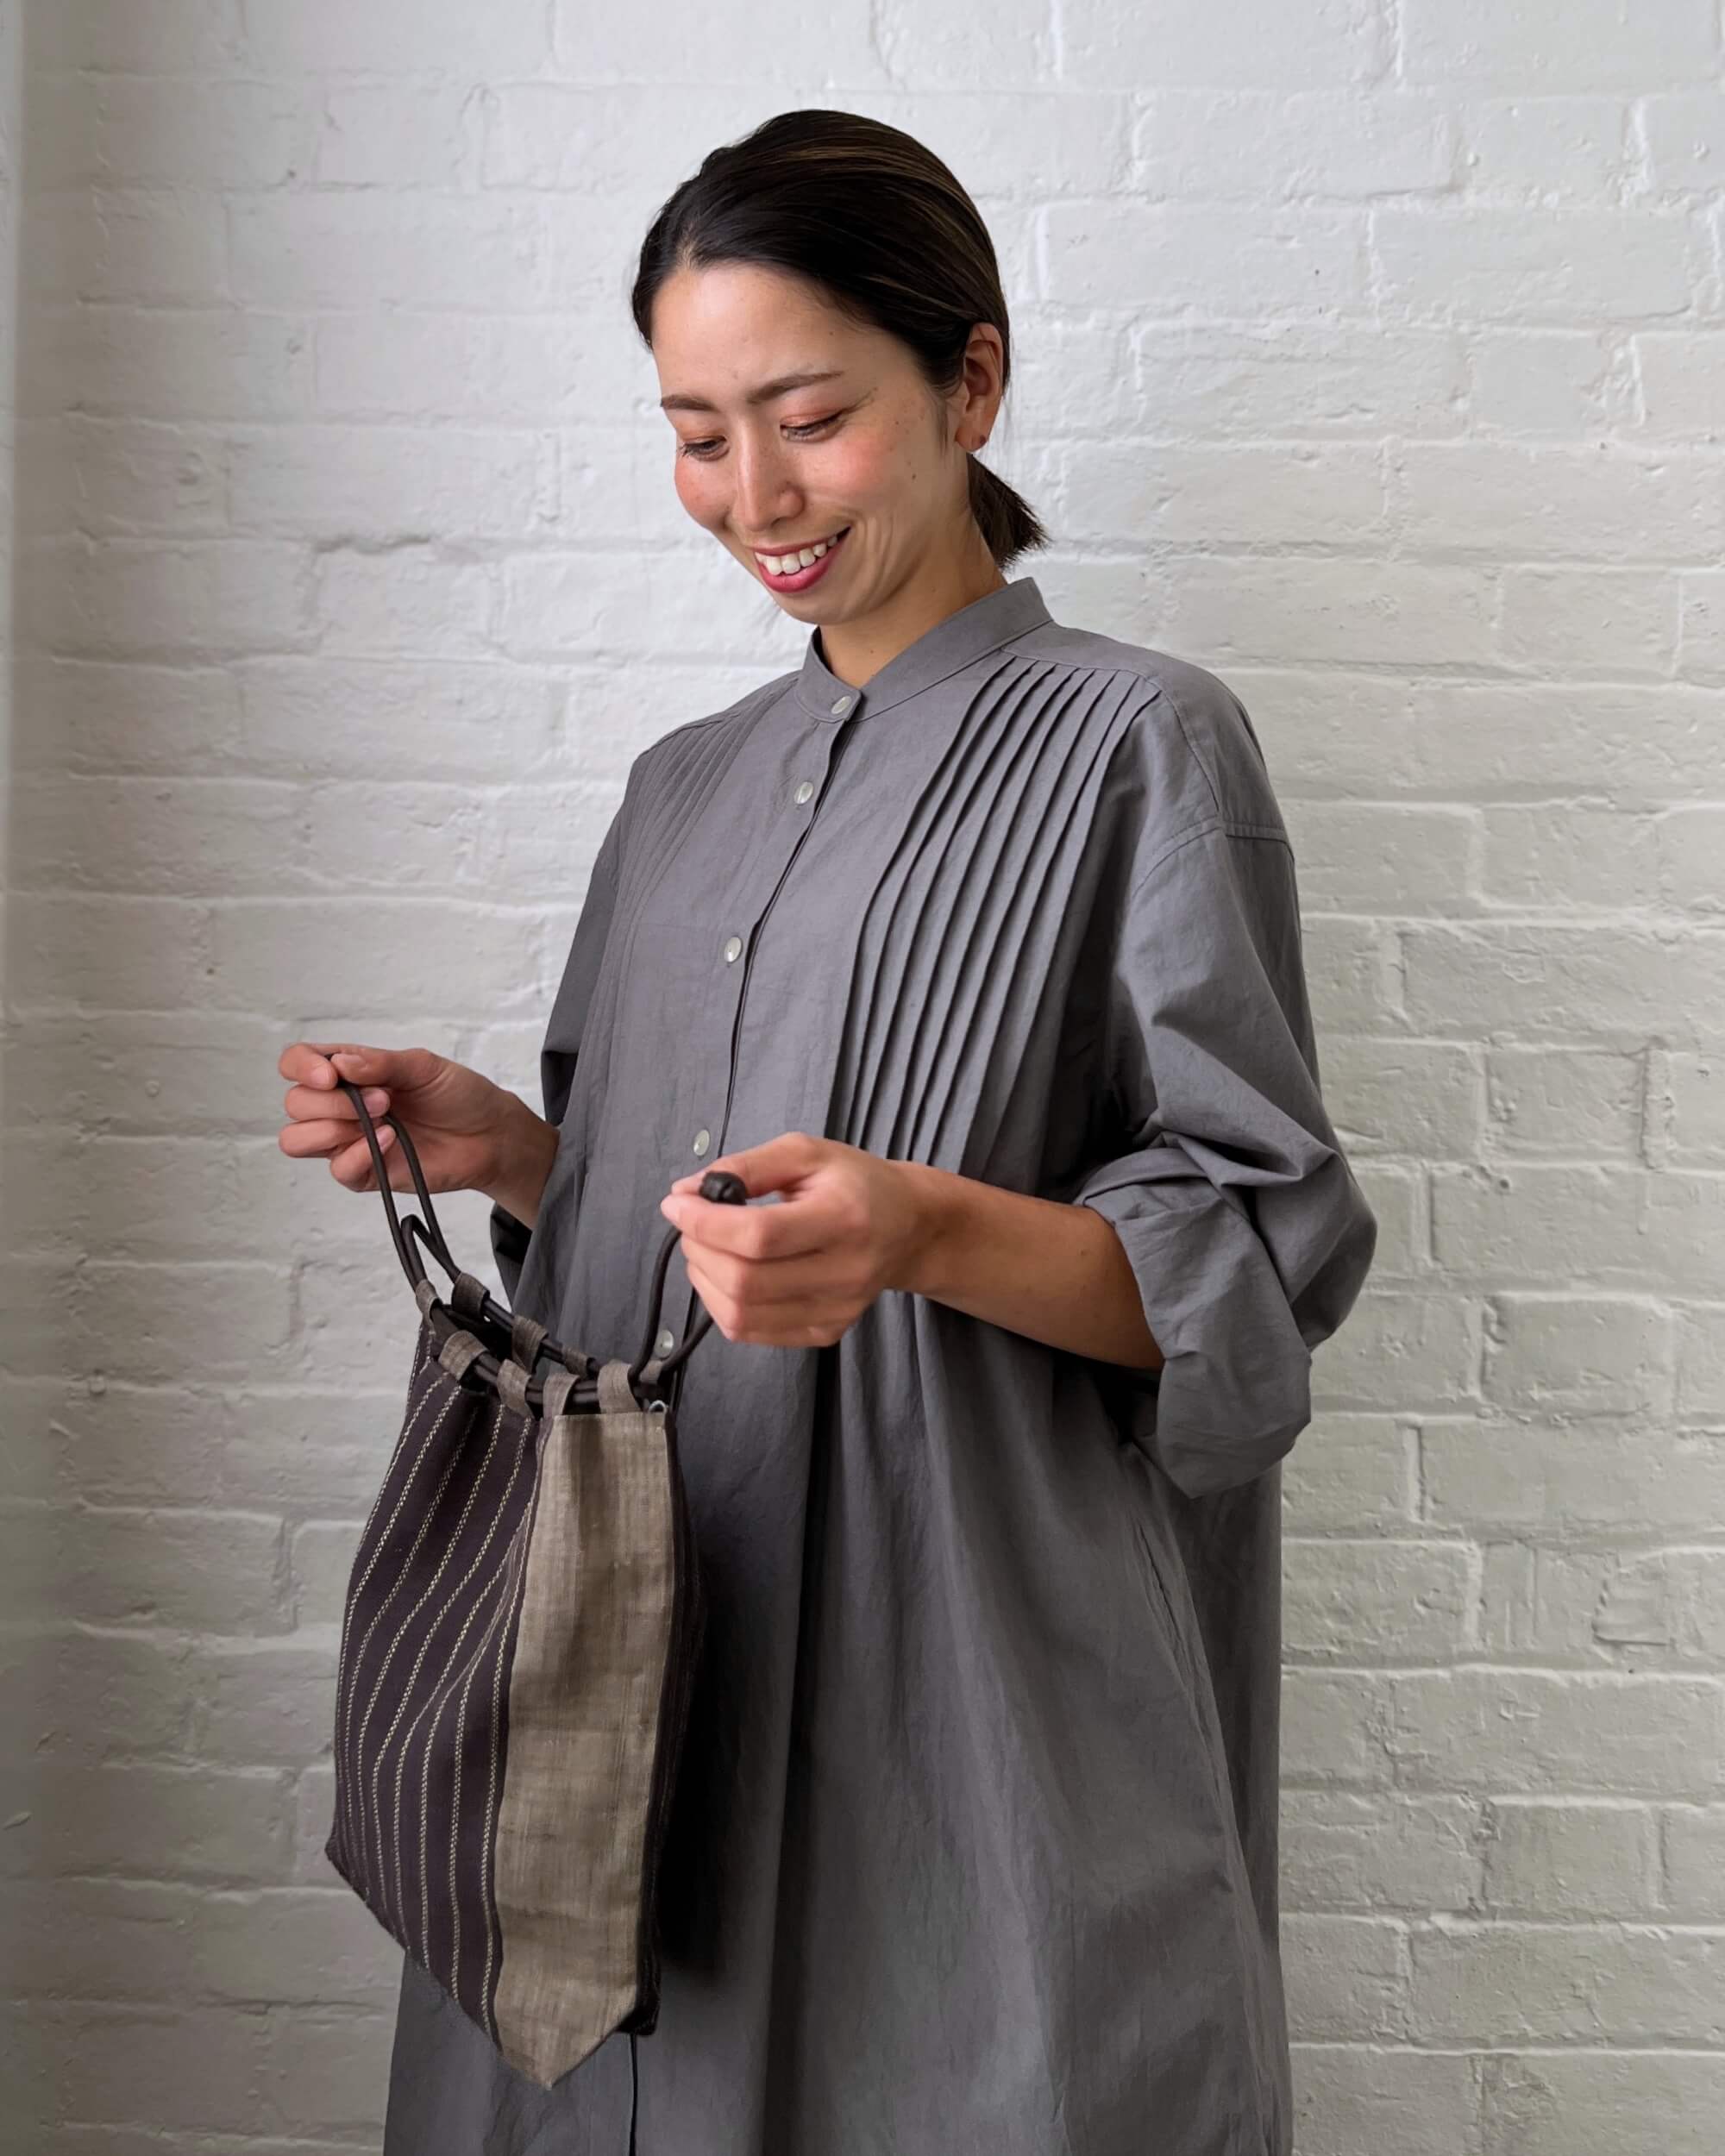 ban inoue : drawstring bag made in japan